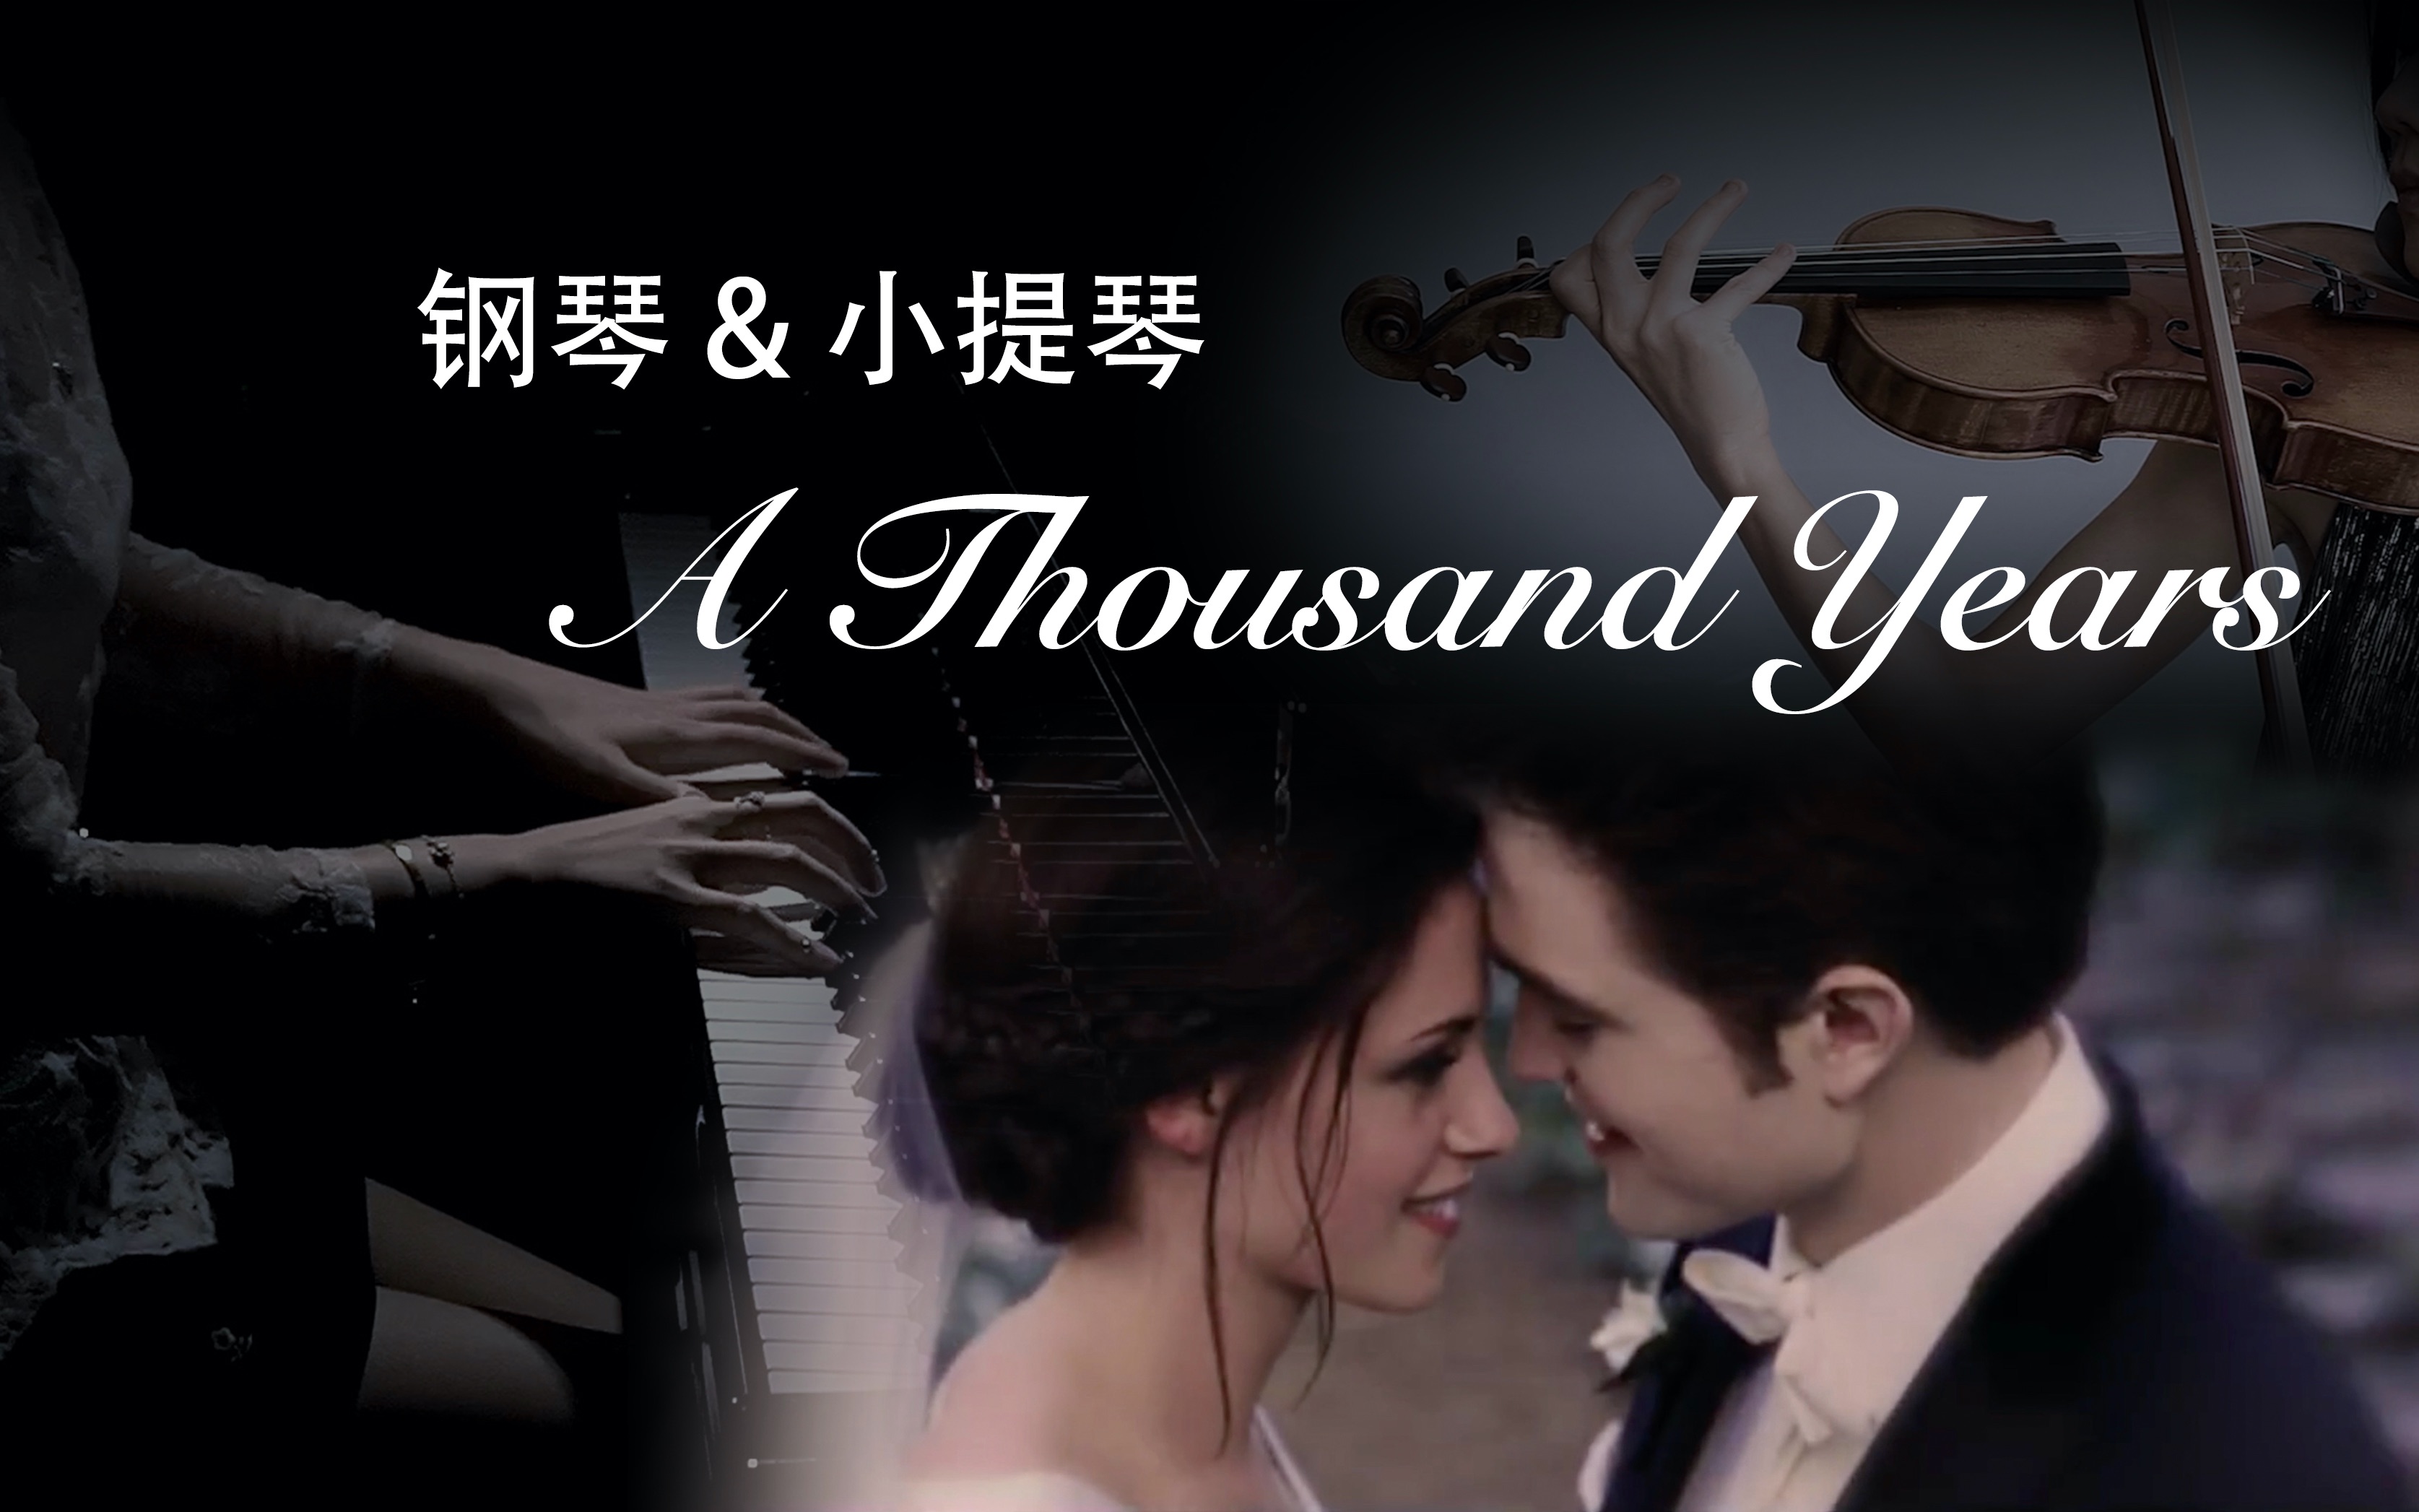 超适合婚礼的BGM《A Thousand Years》钢琴&小提琴合奏完整版